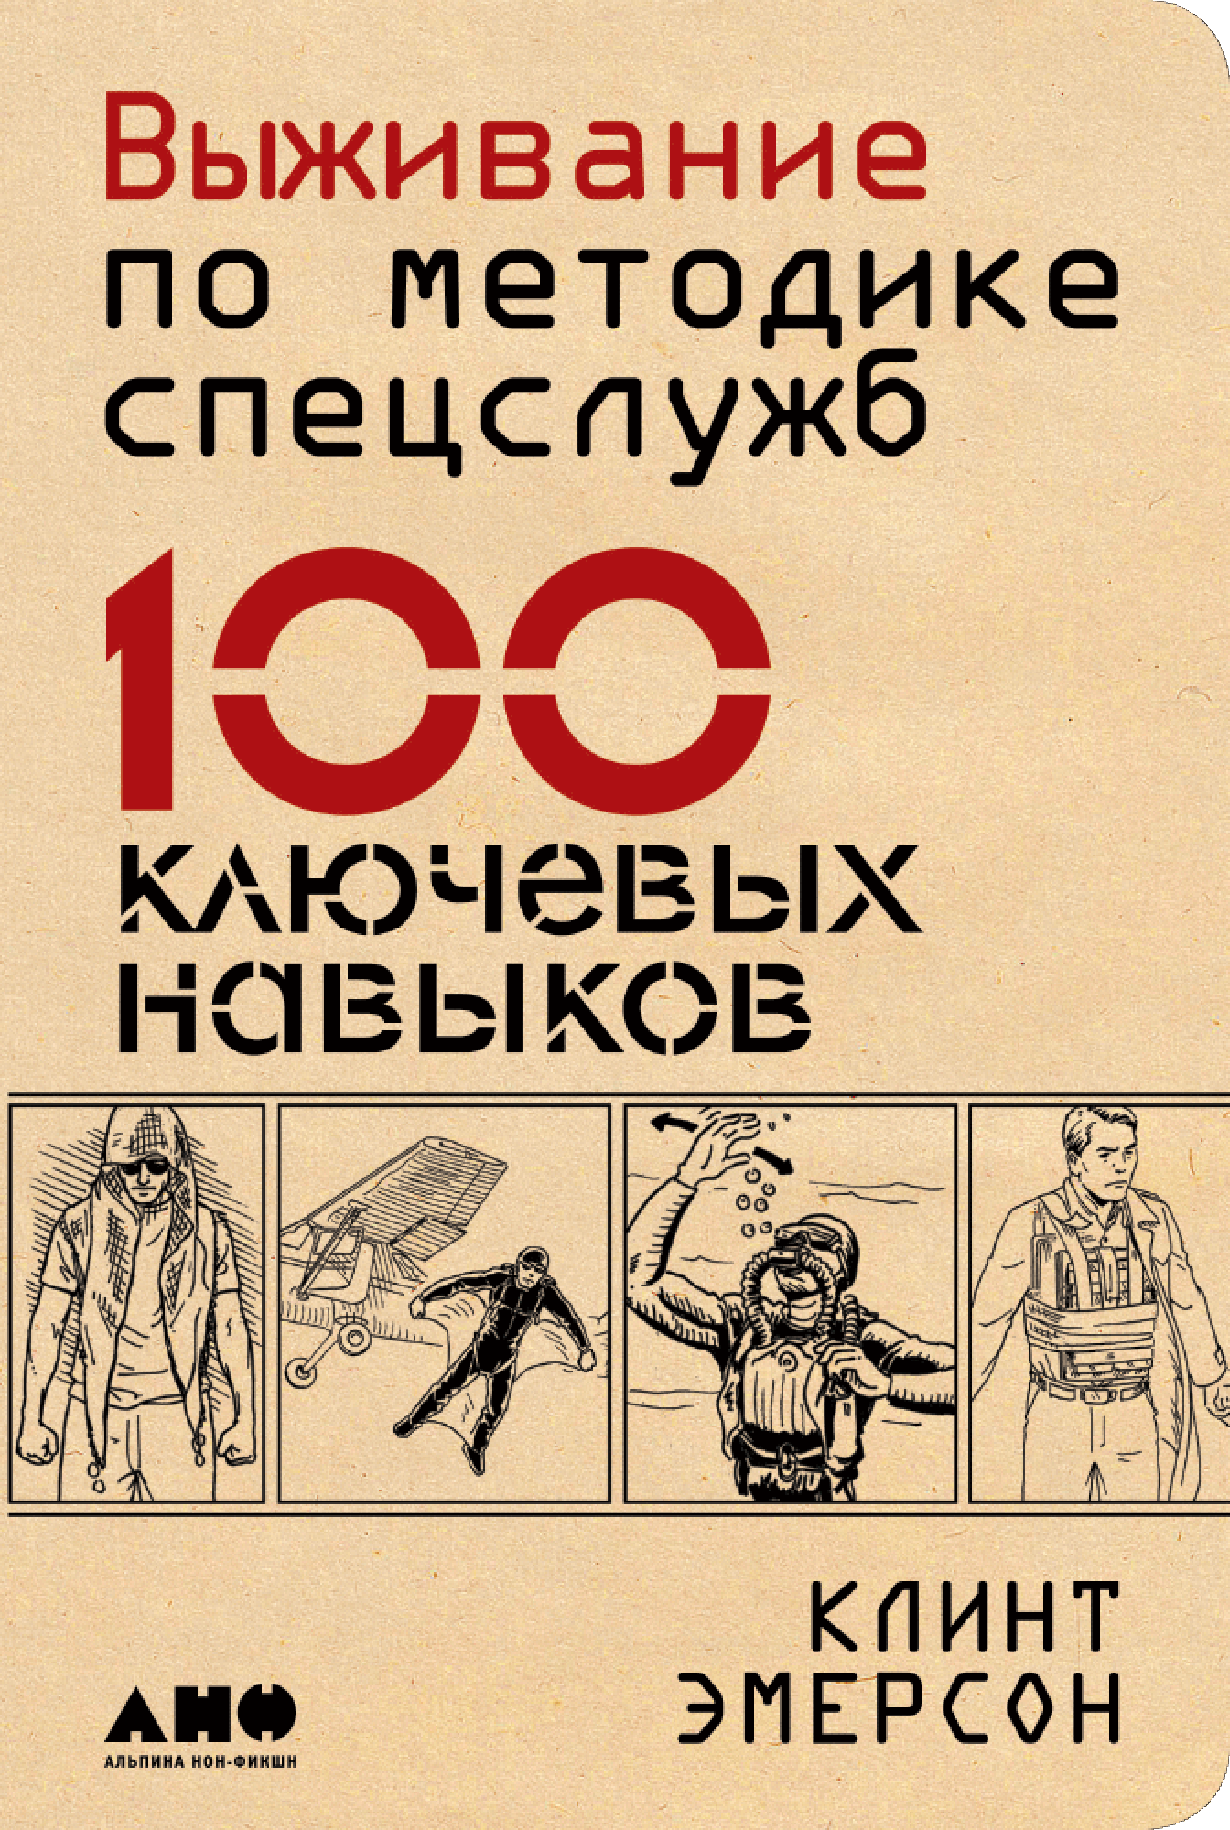 100 навыков по методике спецслужб. Книга 100 ключевых навыков по методике спецслужб.